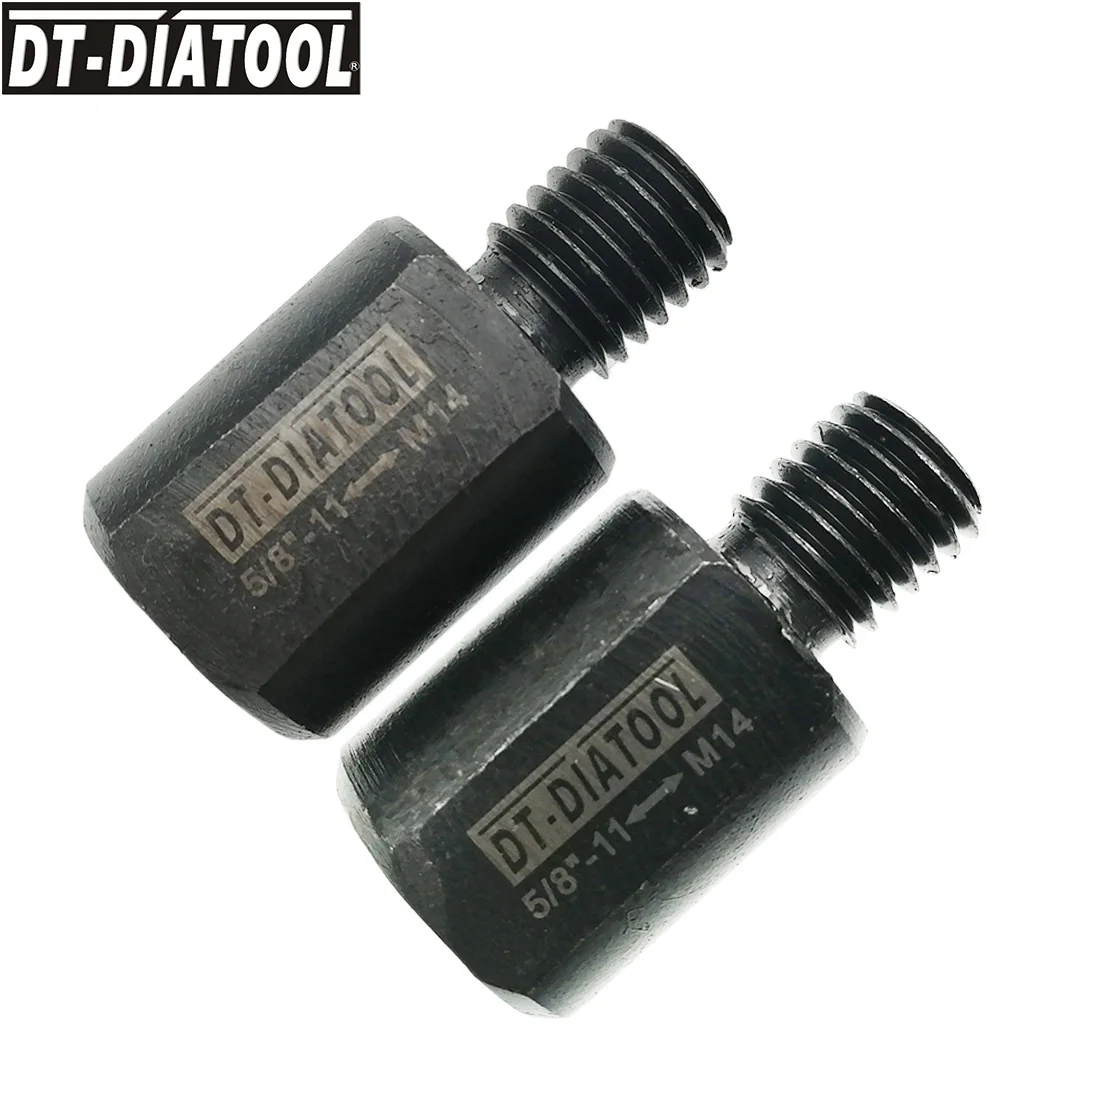 DT-DIATOOL 2 шт./компл. адаптер для M14 до 5/"-11 нить алмазных корончатых сверл преобразователем сигнала шлифовального круга адаптер № 3